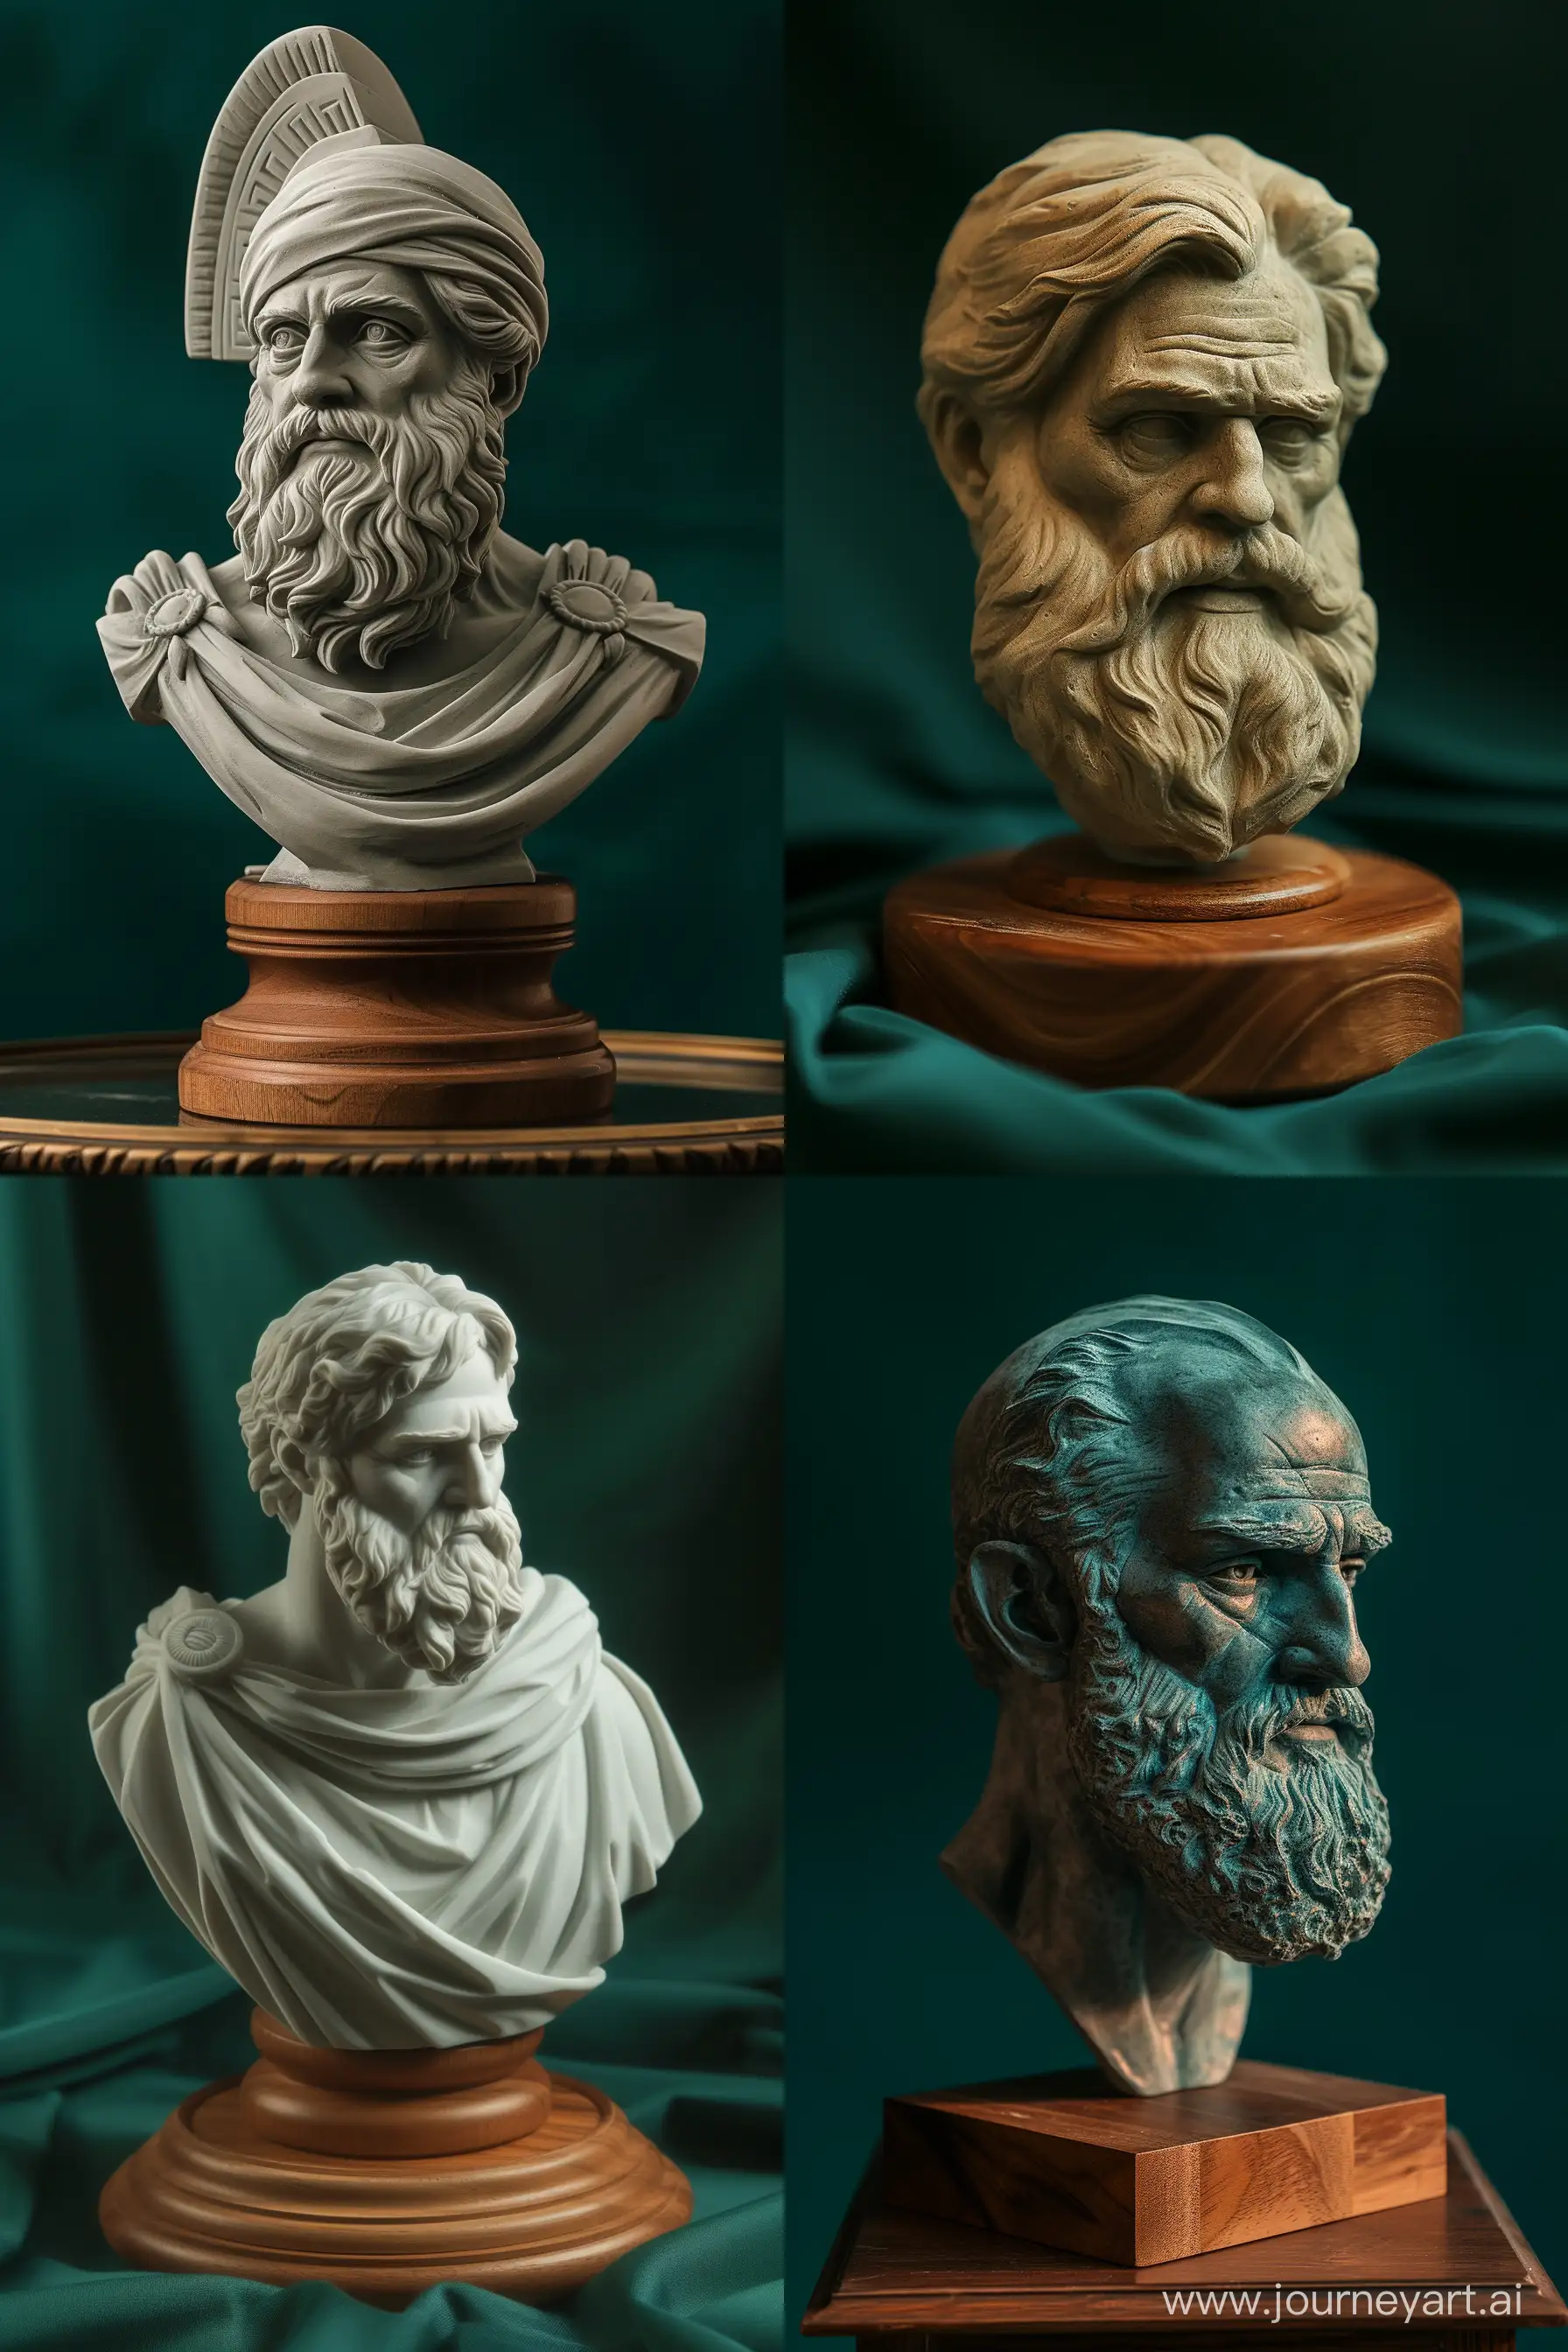 Luxury-Bust-Sculpture-of-Greek-Philosopher-on-Dark-Green-Background